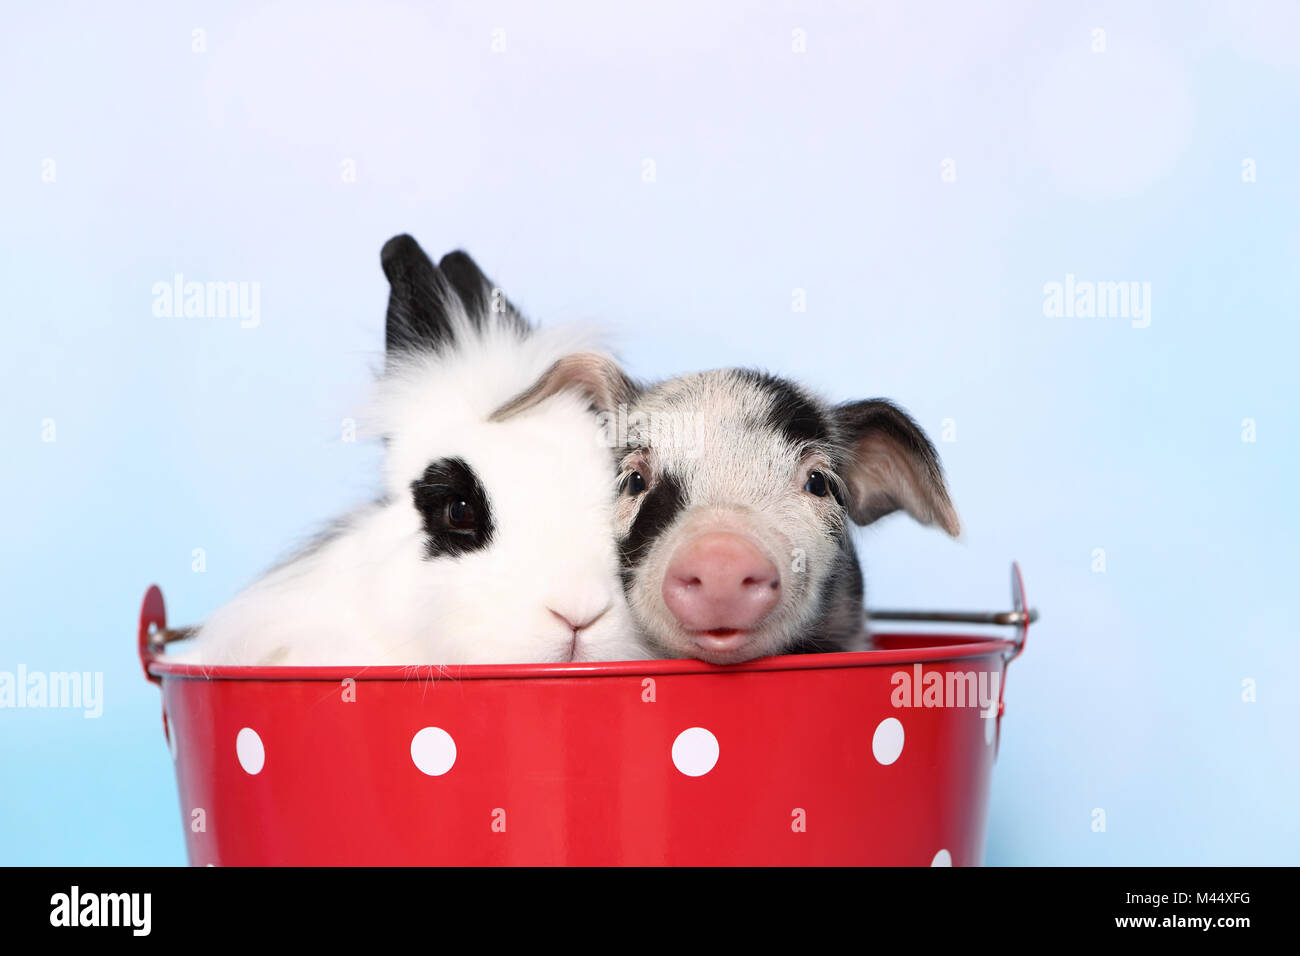 Porc domestique, Turopolje x ?. Porcinet (1 semaine) et Teddy lapin nain assis dans un grand seau rouge à pois blancs. Studio photo sur un fond beige. Allemagne Banque D'Images